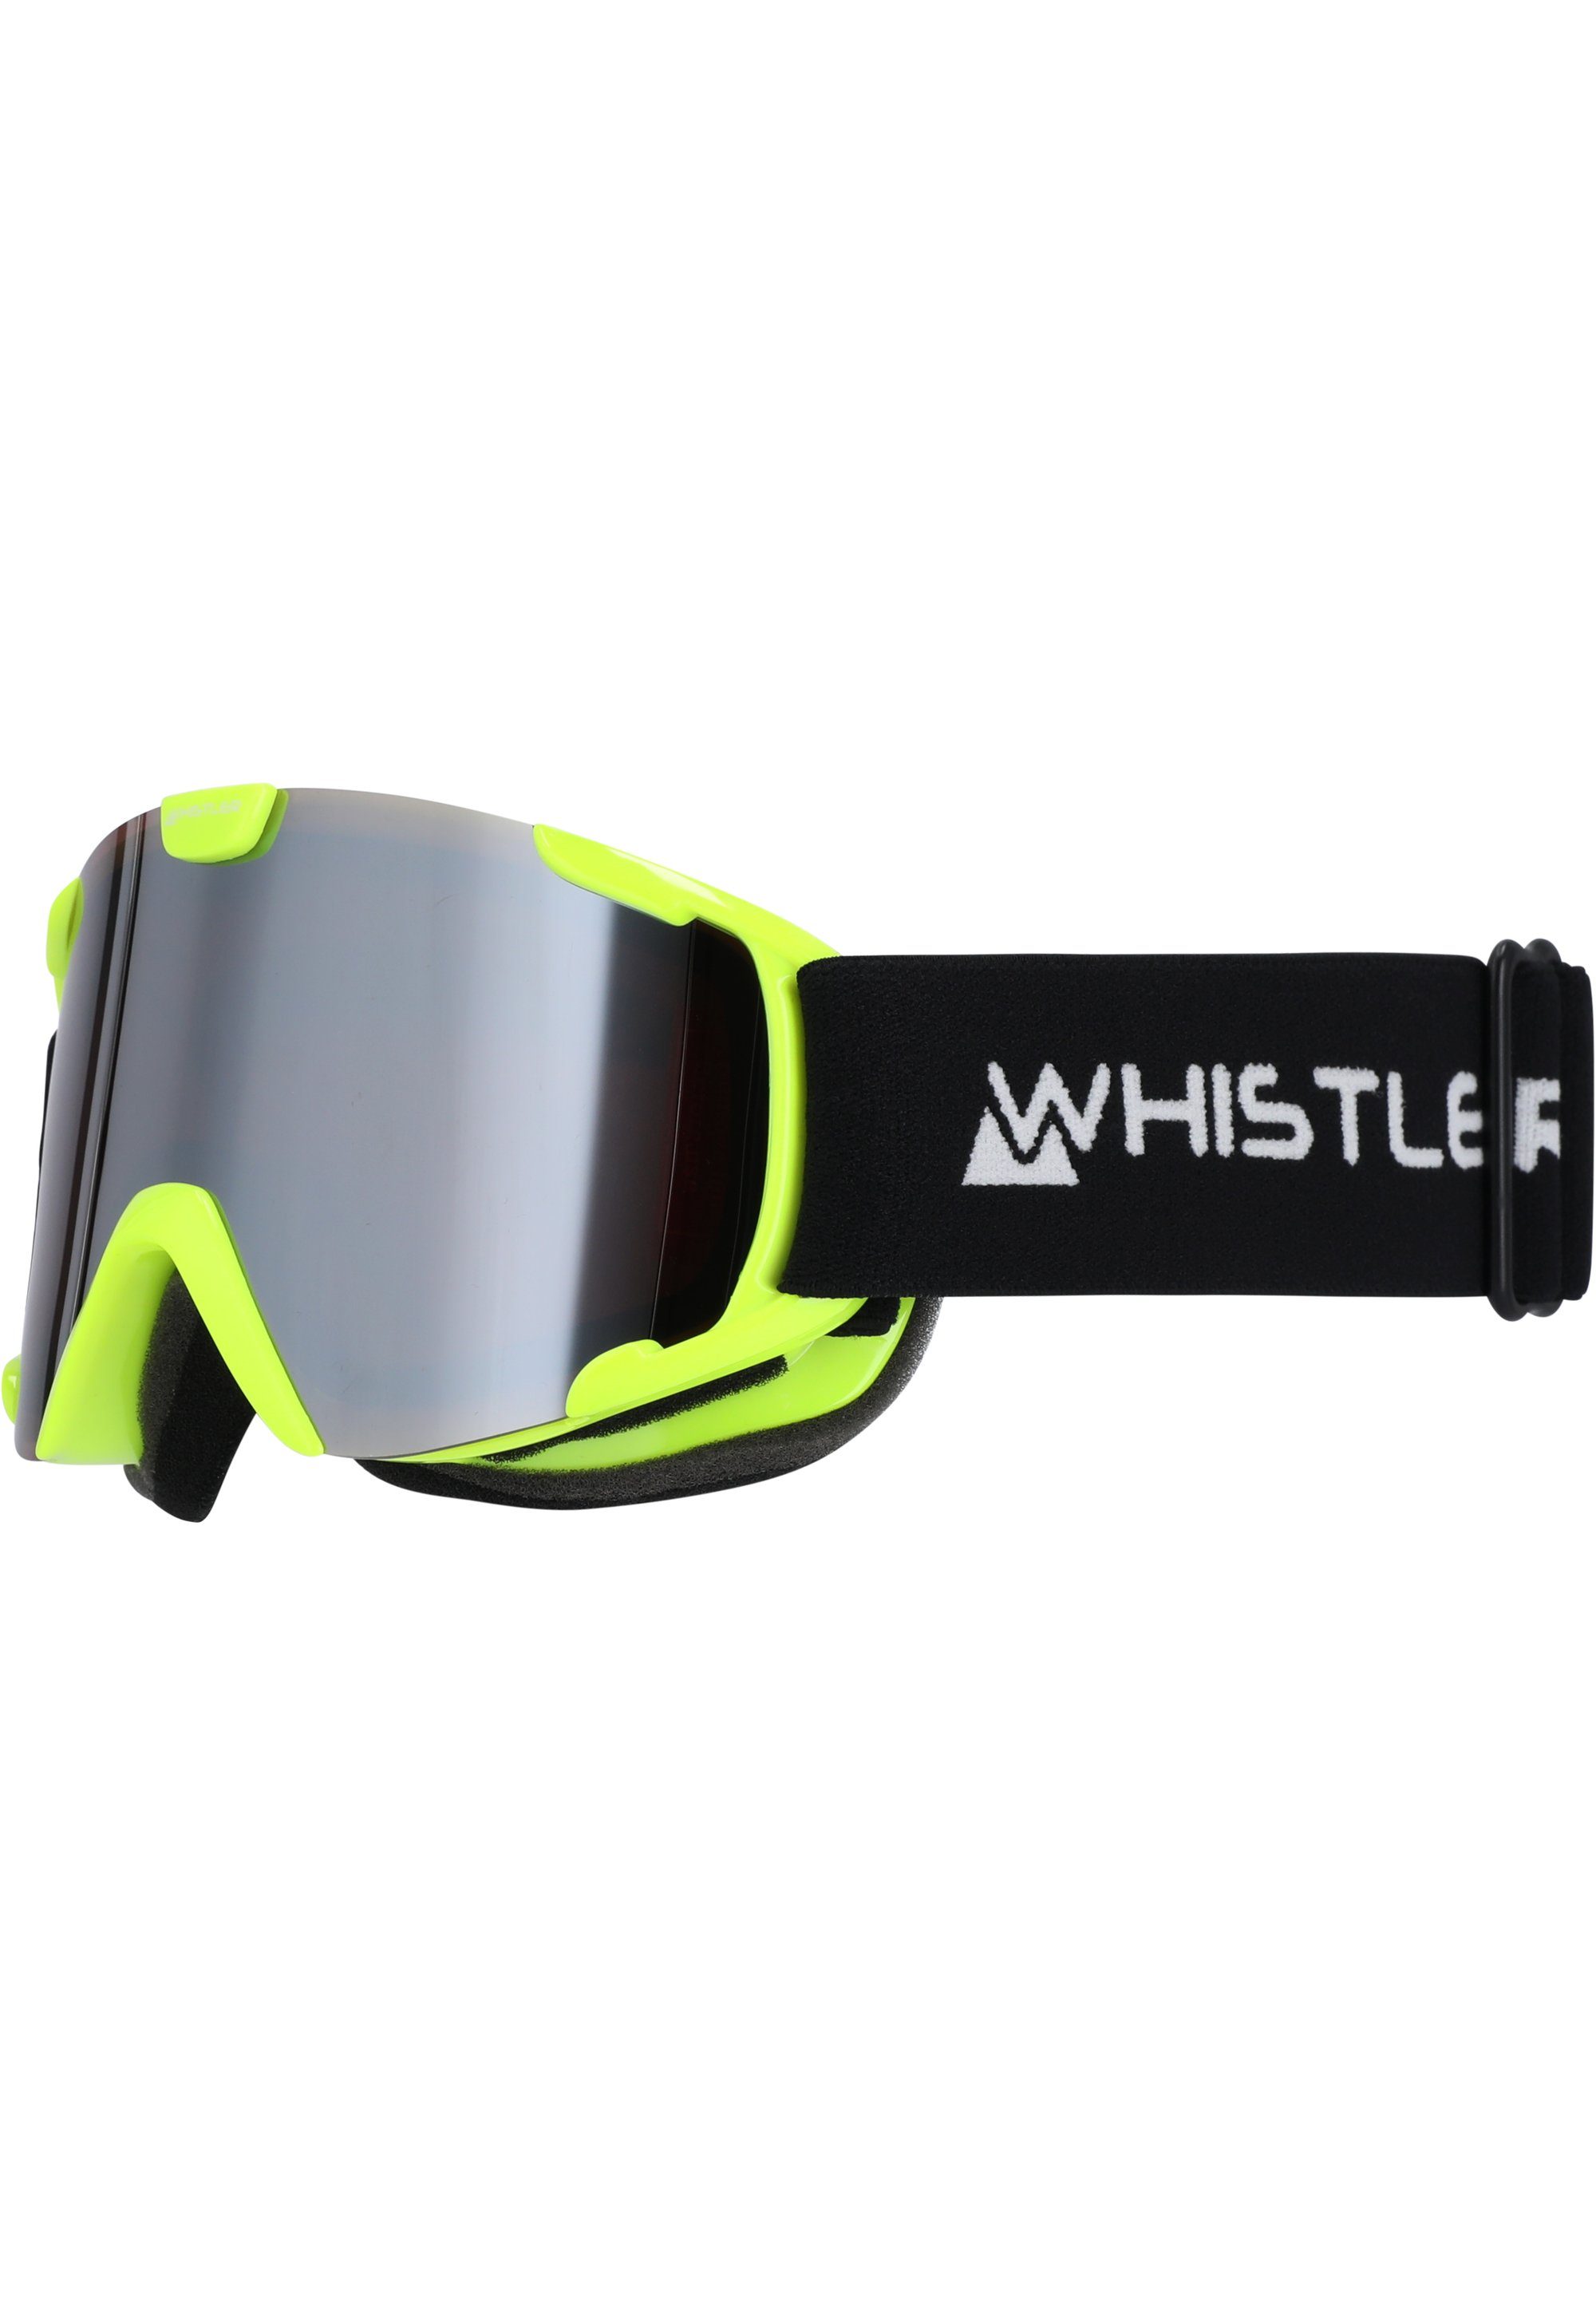 Skibrille WS800 mit neongelb Jr., Anti-Beschlag-Funktion WHISTLER